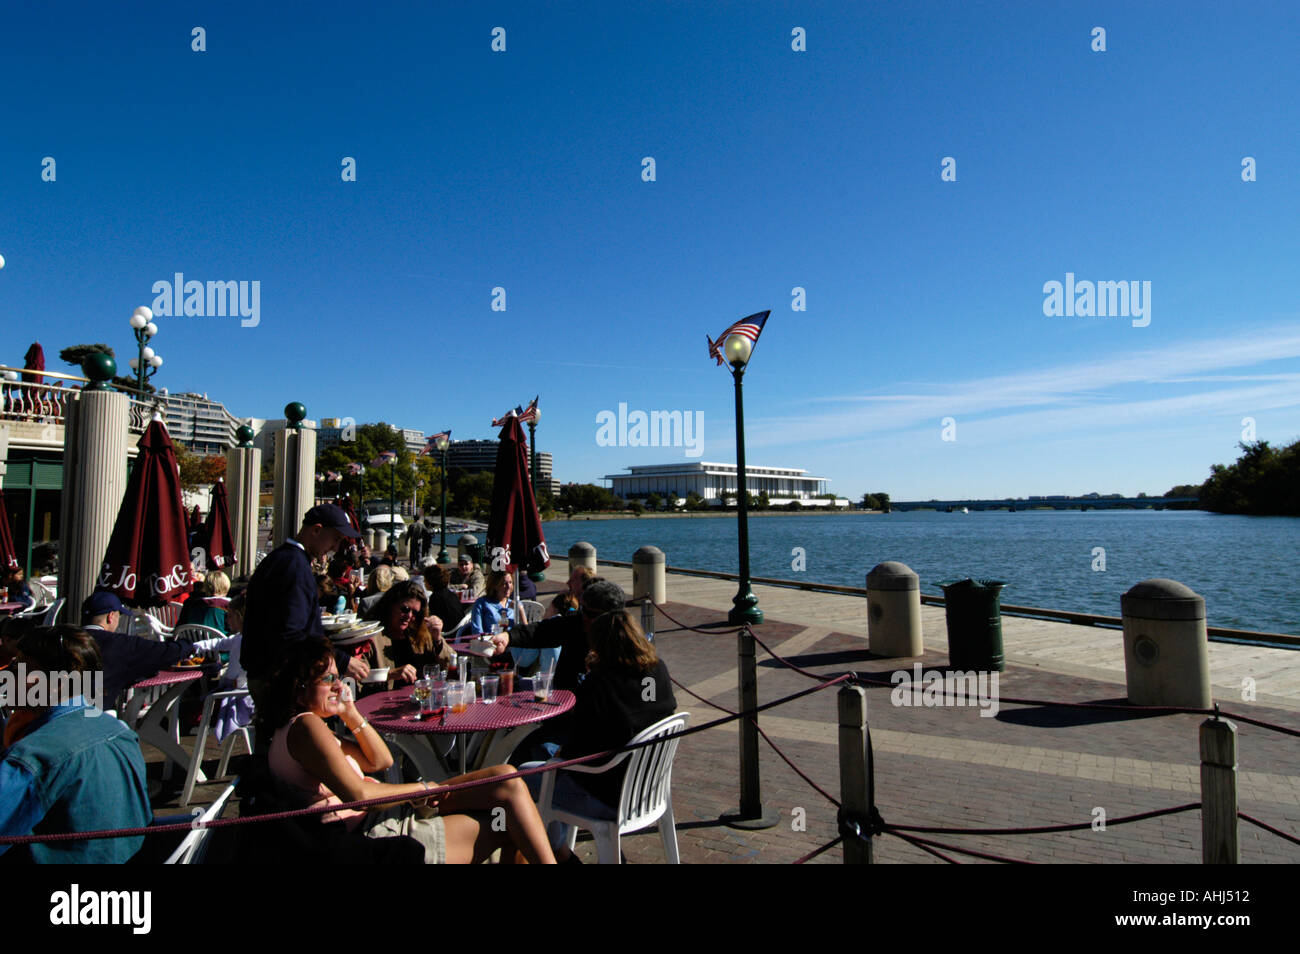 Bar and restaurant on the banks of the Potomac River, Washington DC, USA Stock Photo